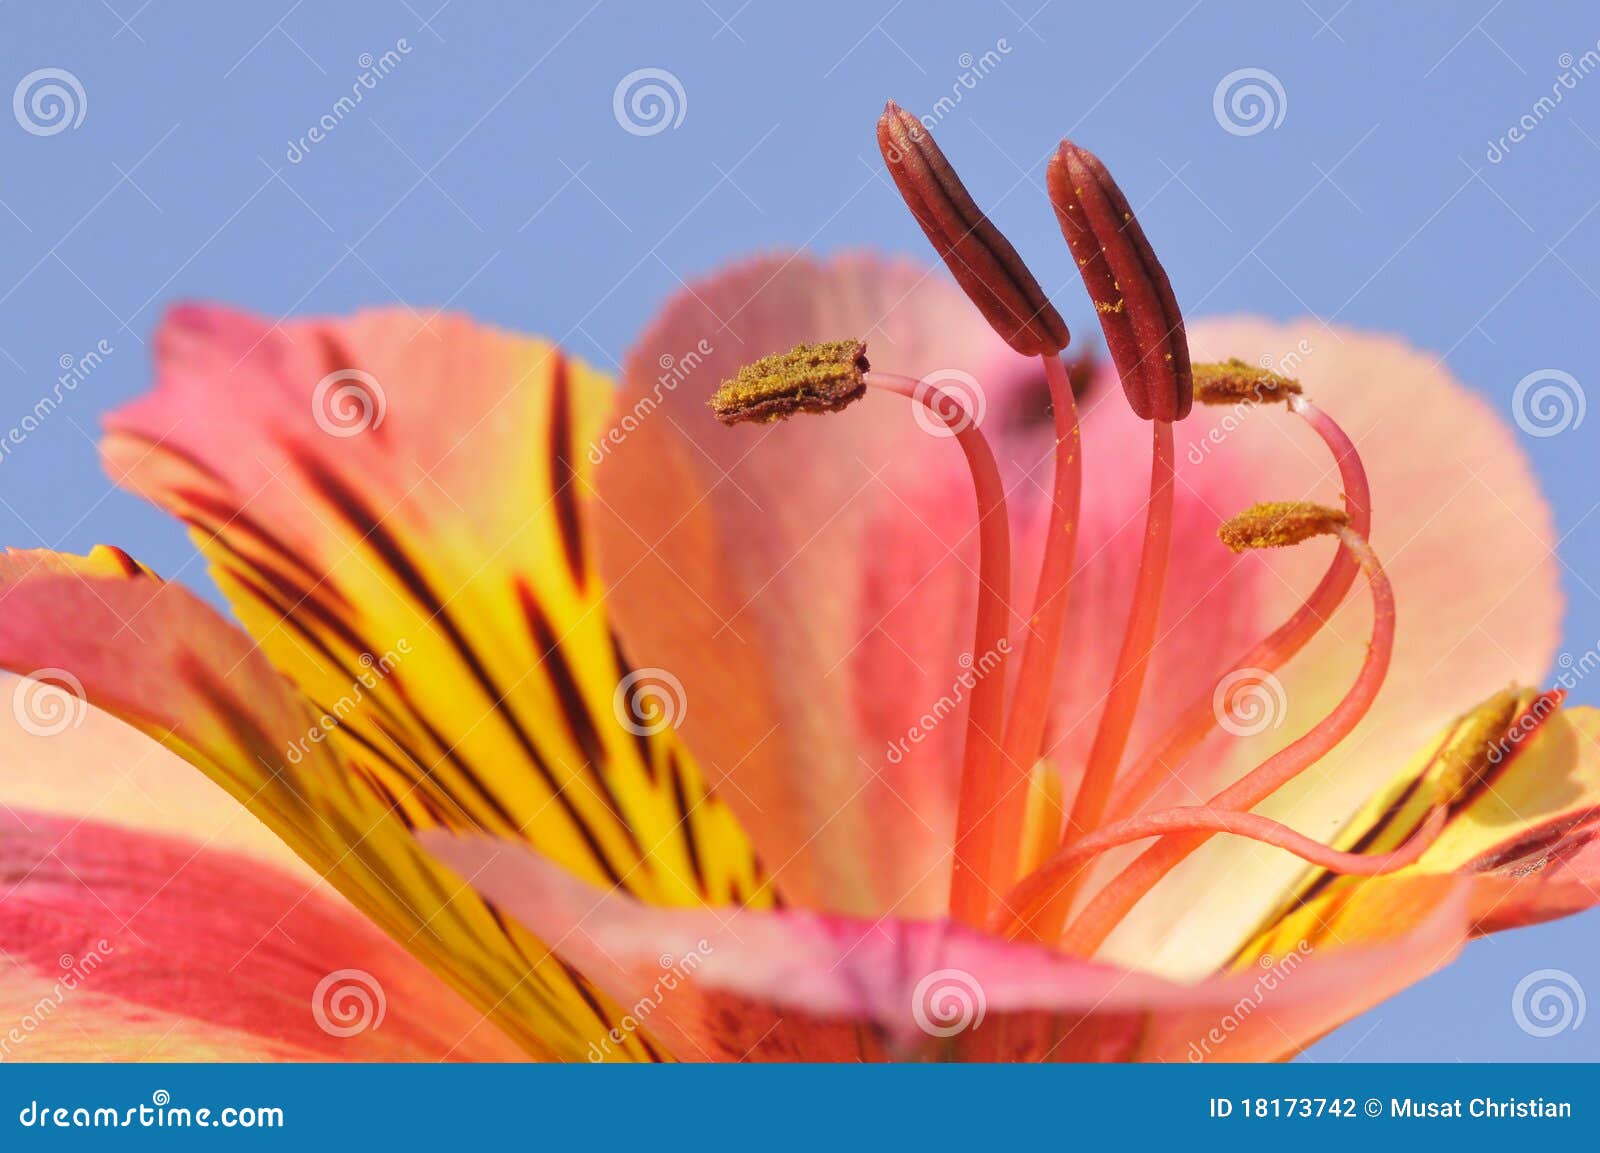 stamen peruvian lily flower